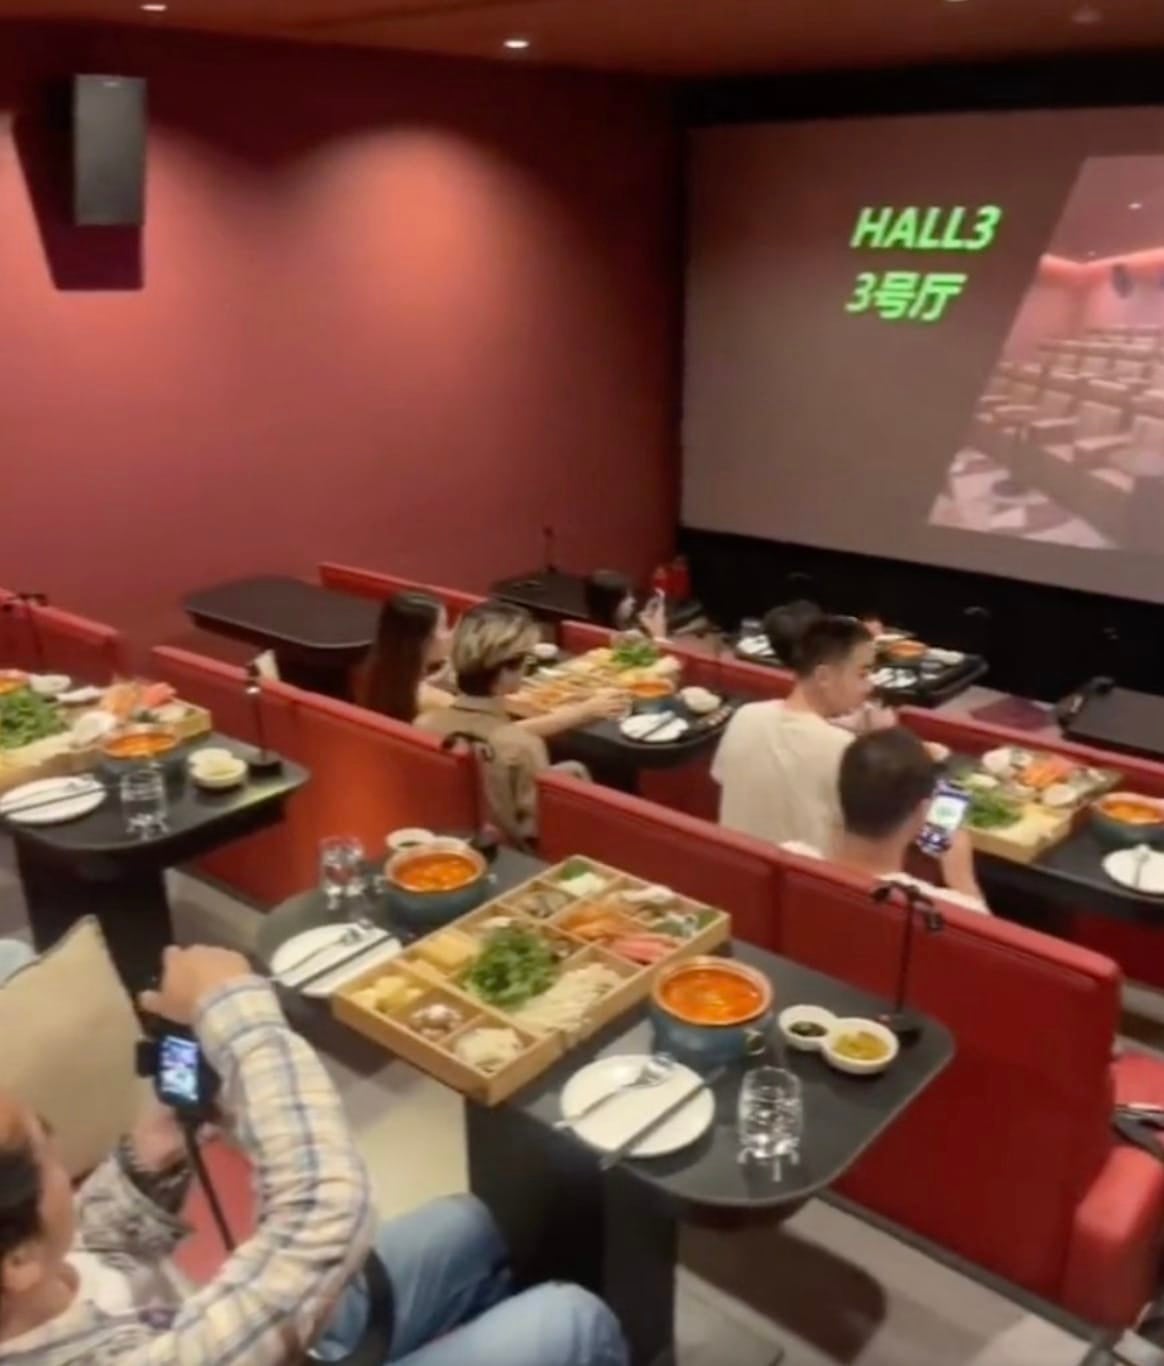 โรงภาพยนตร์ในจีน กินชาบูในโรงหนังได้